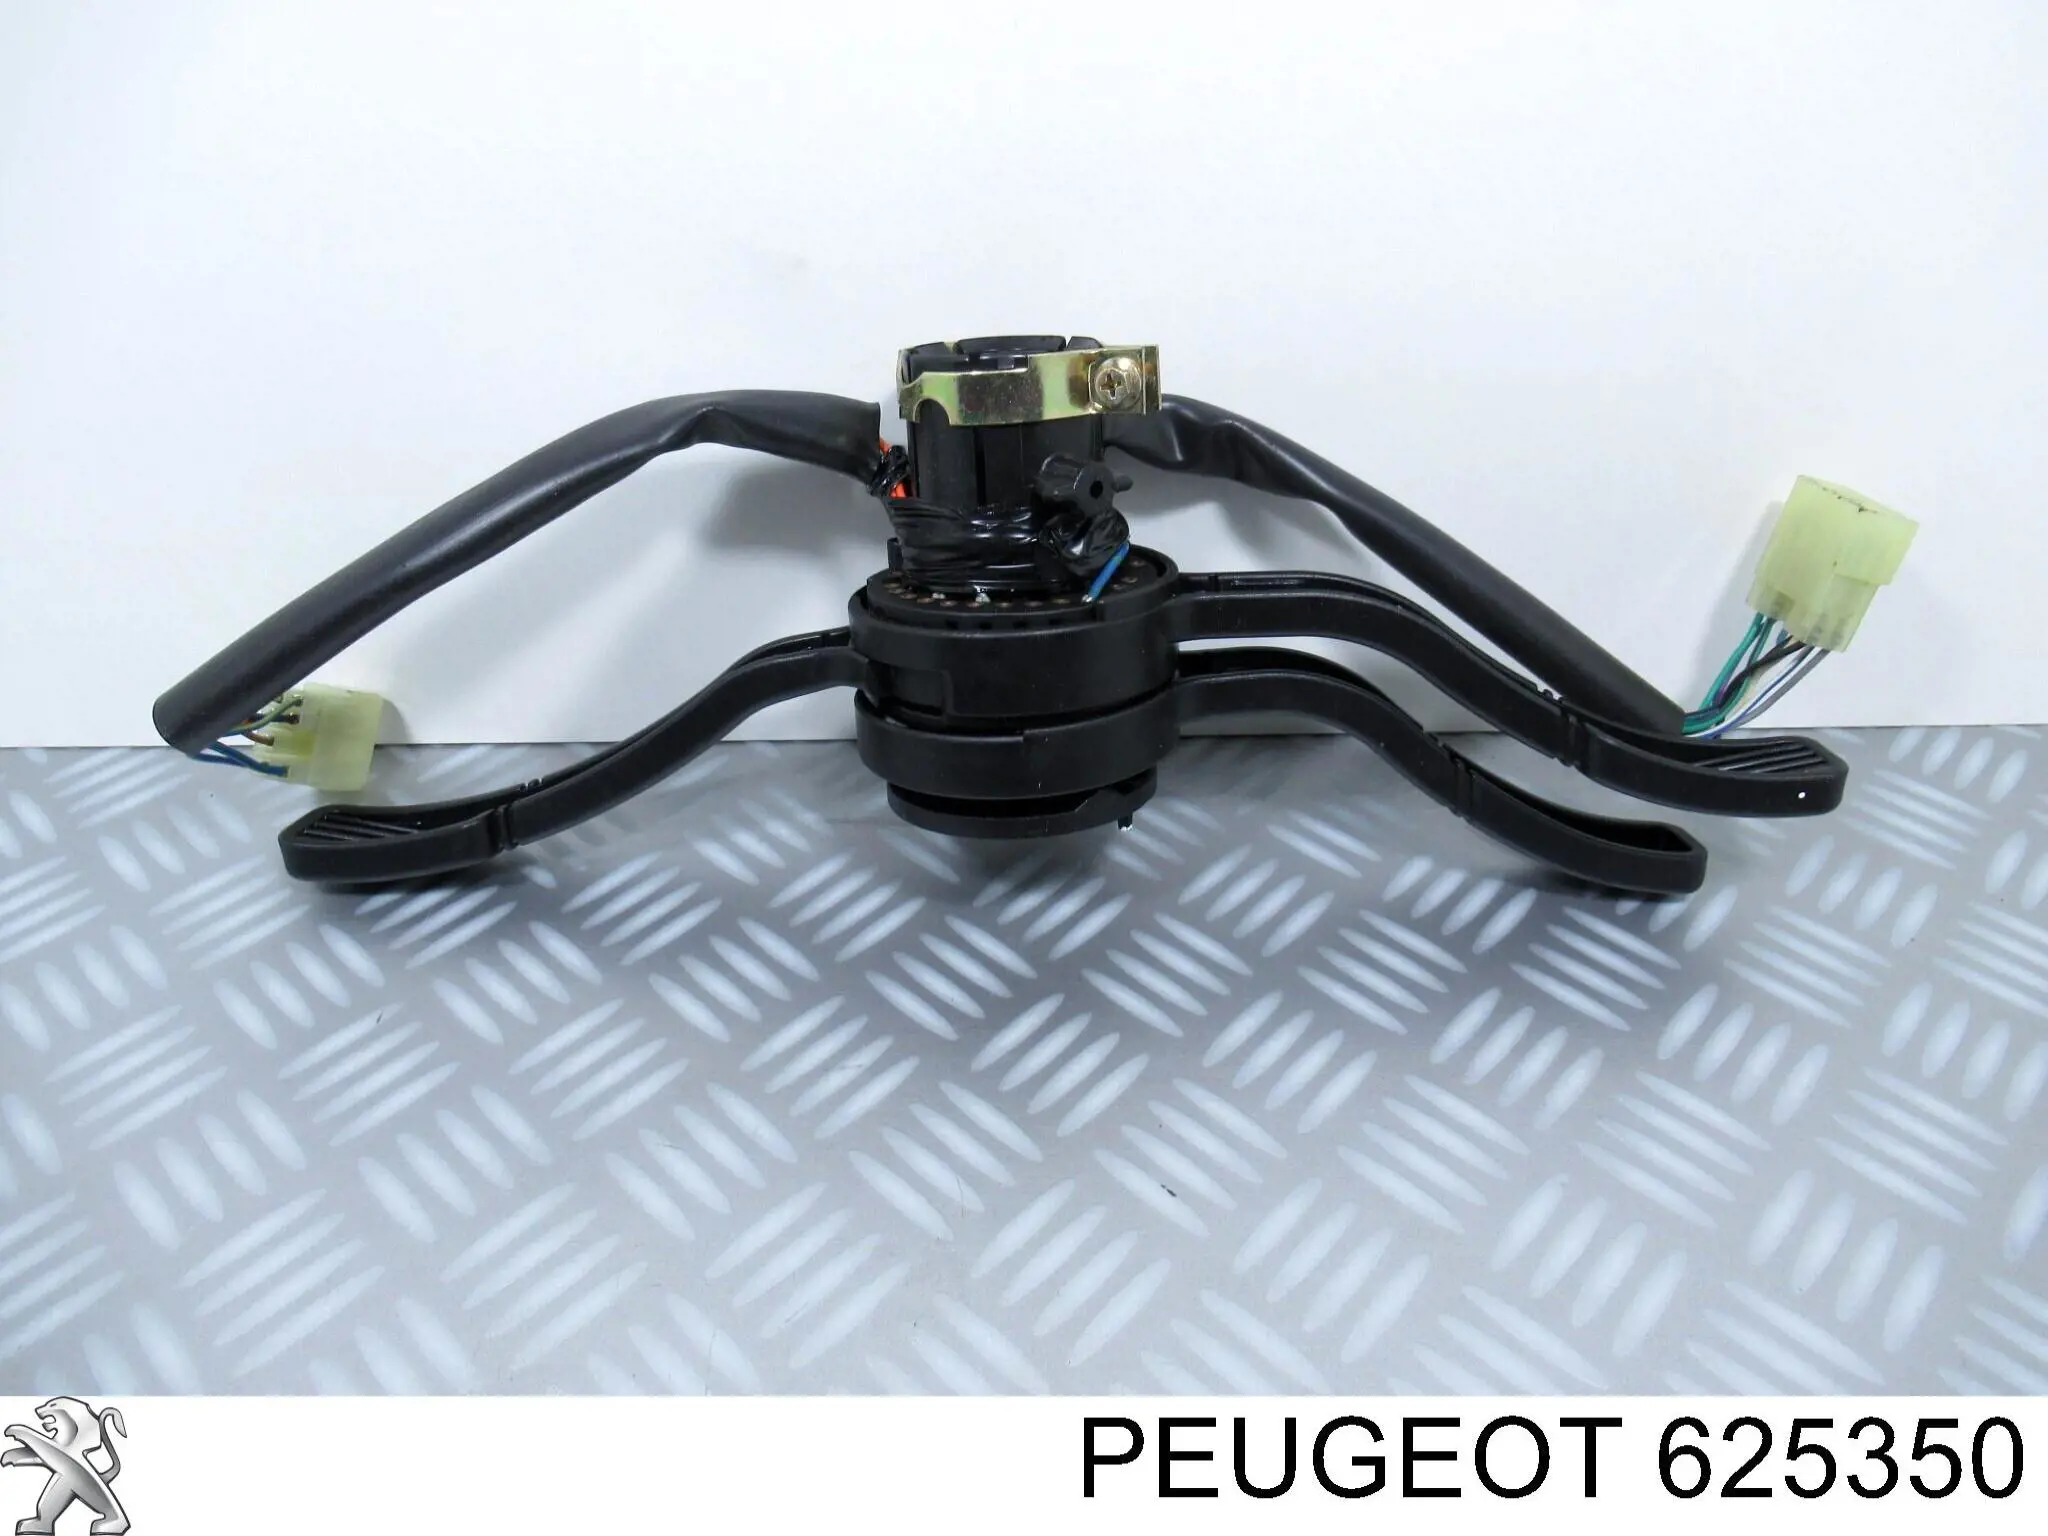 625350 Peugeot/Citroen conmutador en la columna de dirección completo